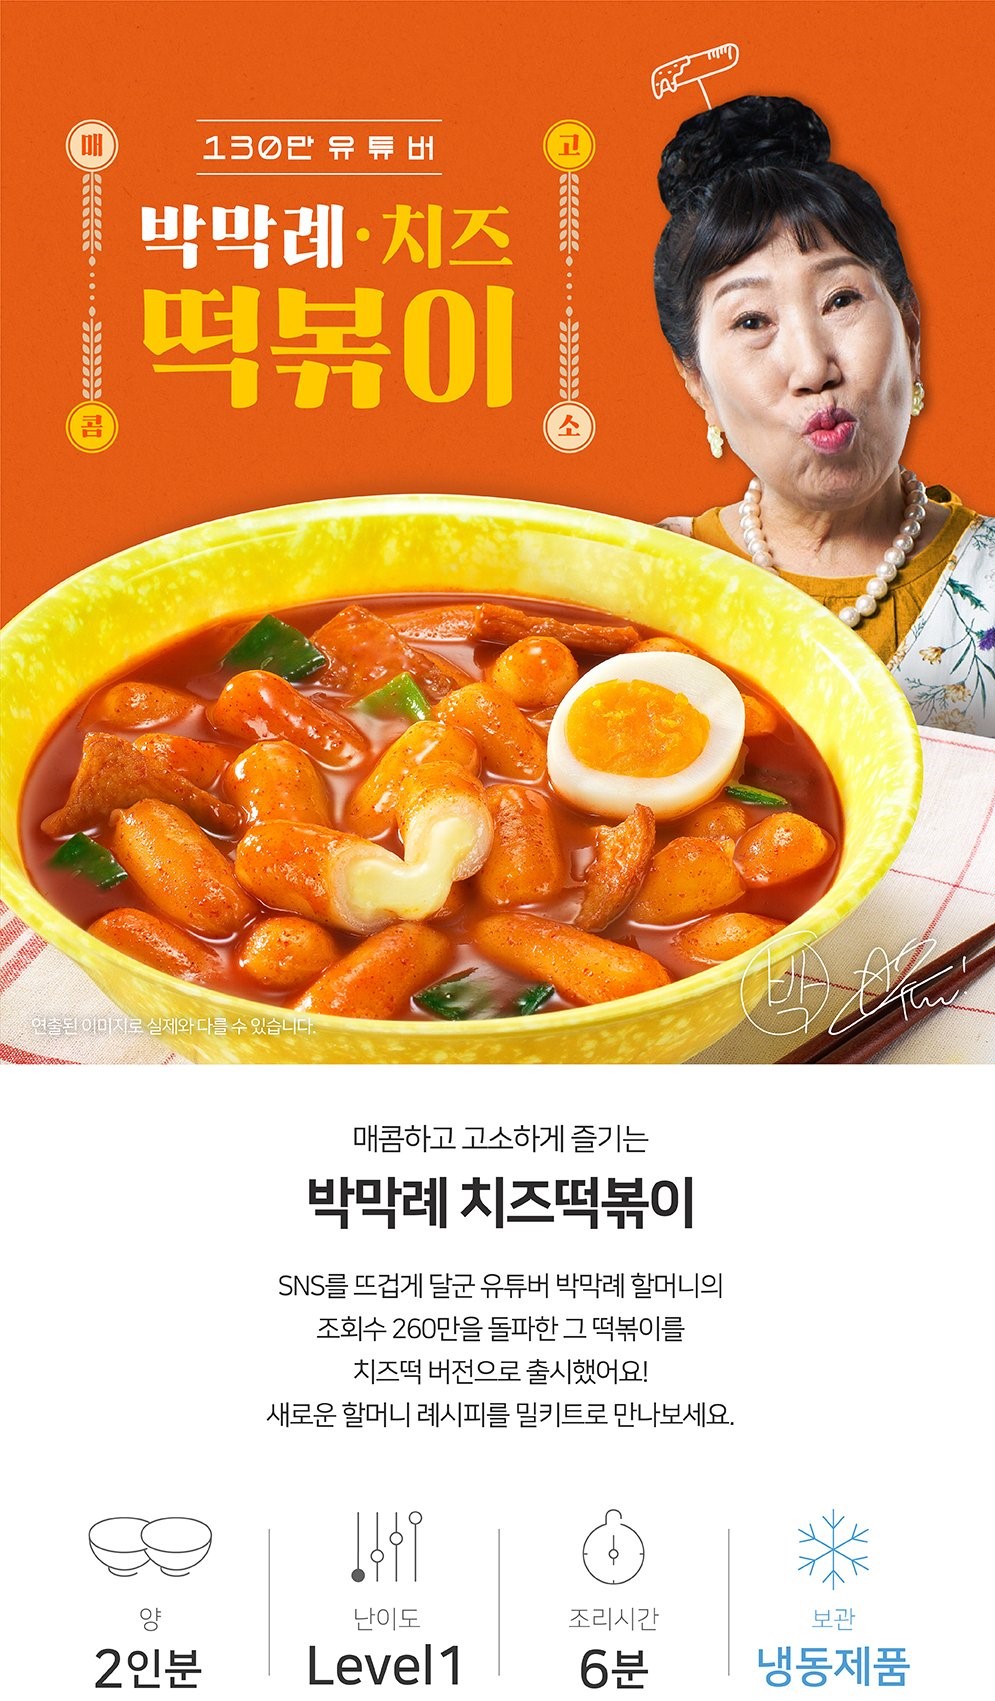 韓國食品-[Bagmaglye] 芝士炒年糕 485g